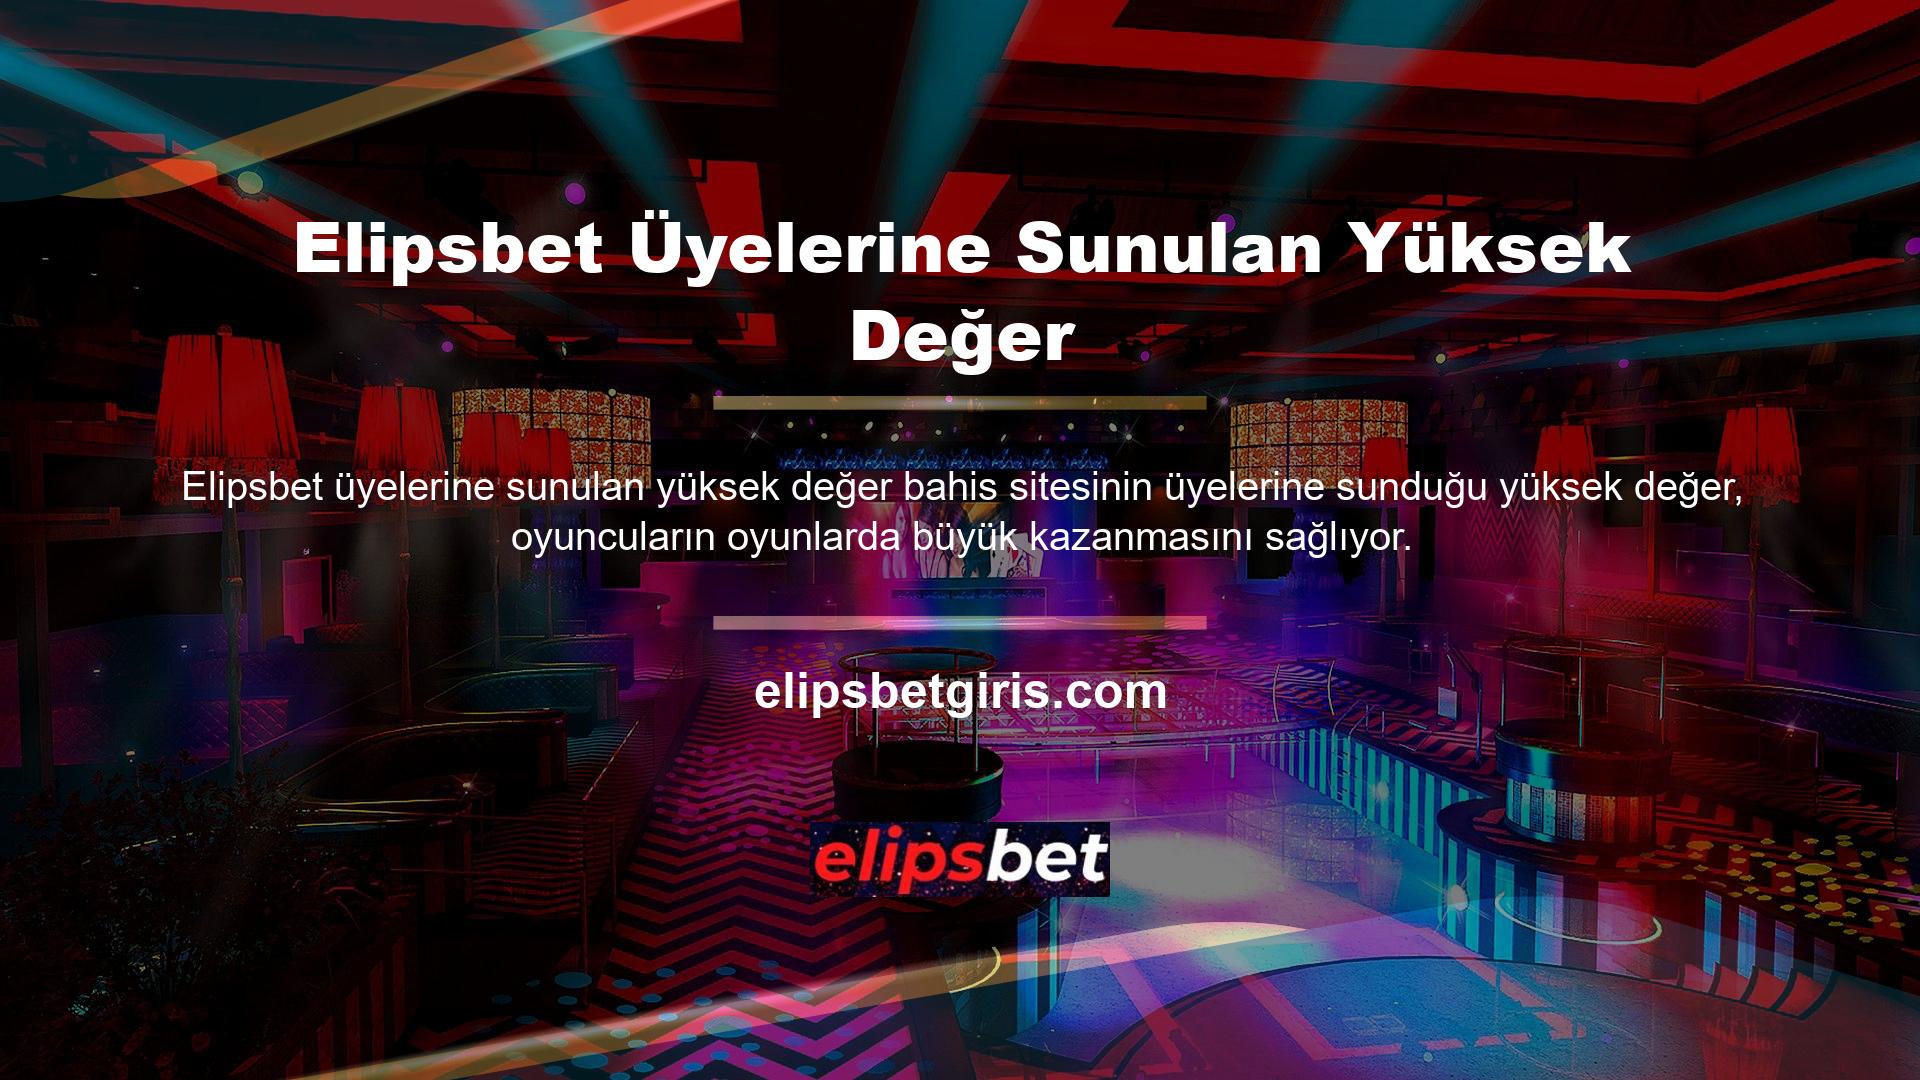 Türkiye casinoları yasaklayan ülkelerden biri